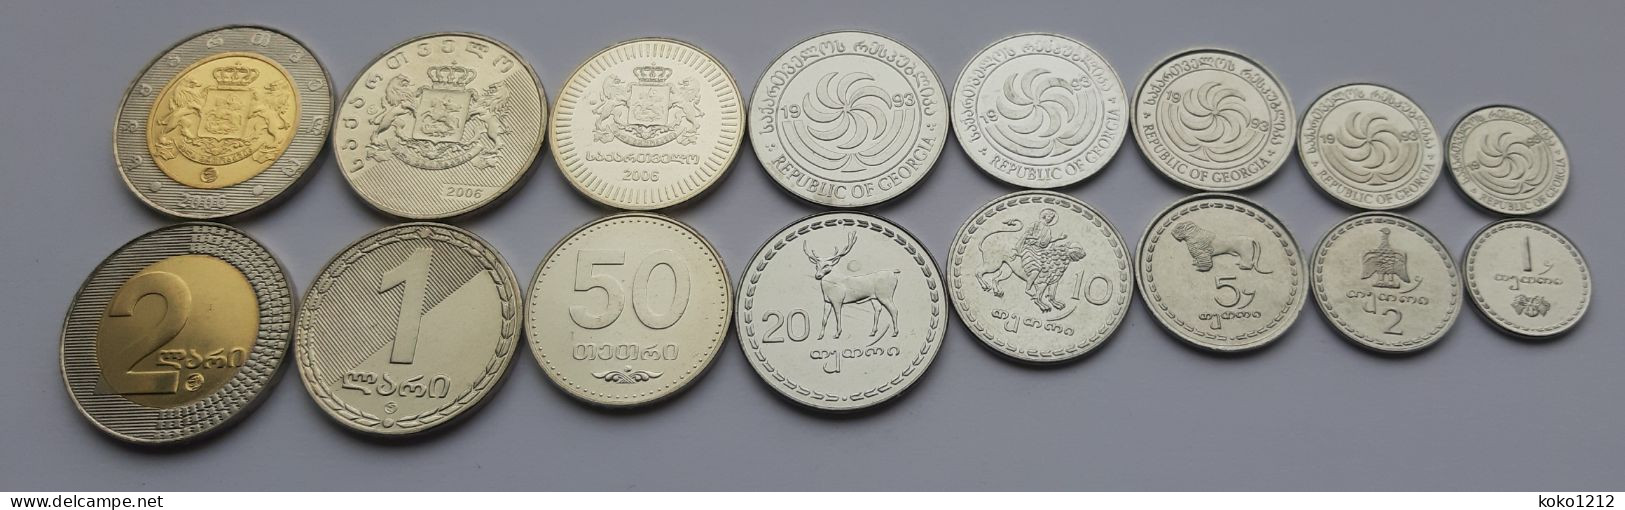 Georgia Set Of 8 Coins UNC 1 Tetri To 2 Lari 1993 - 2006 - Georgia